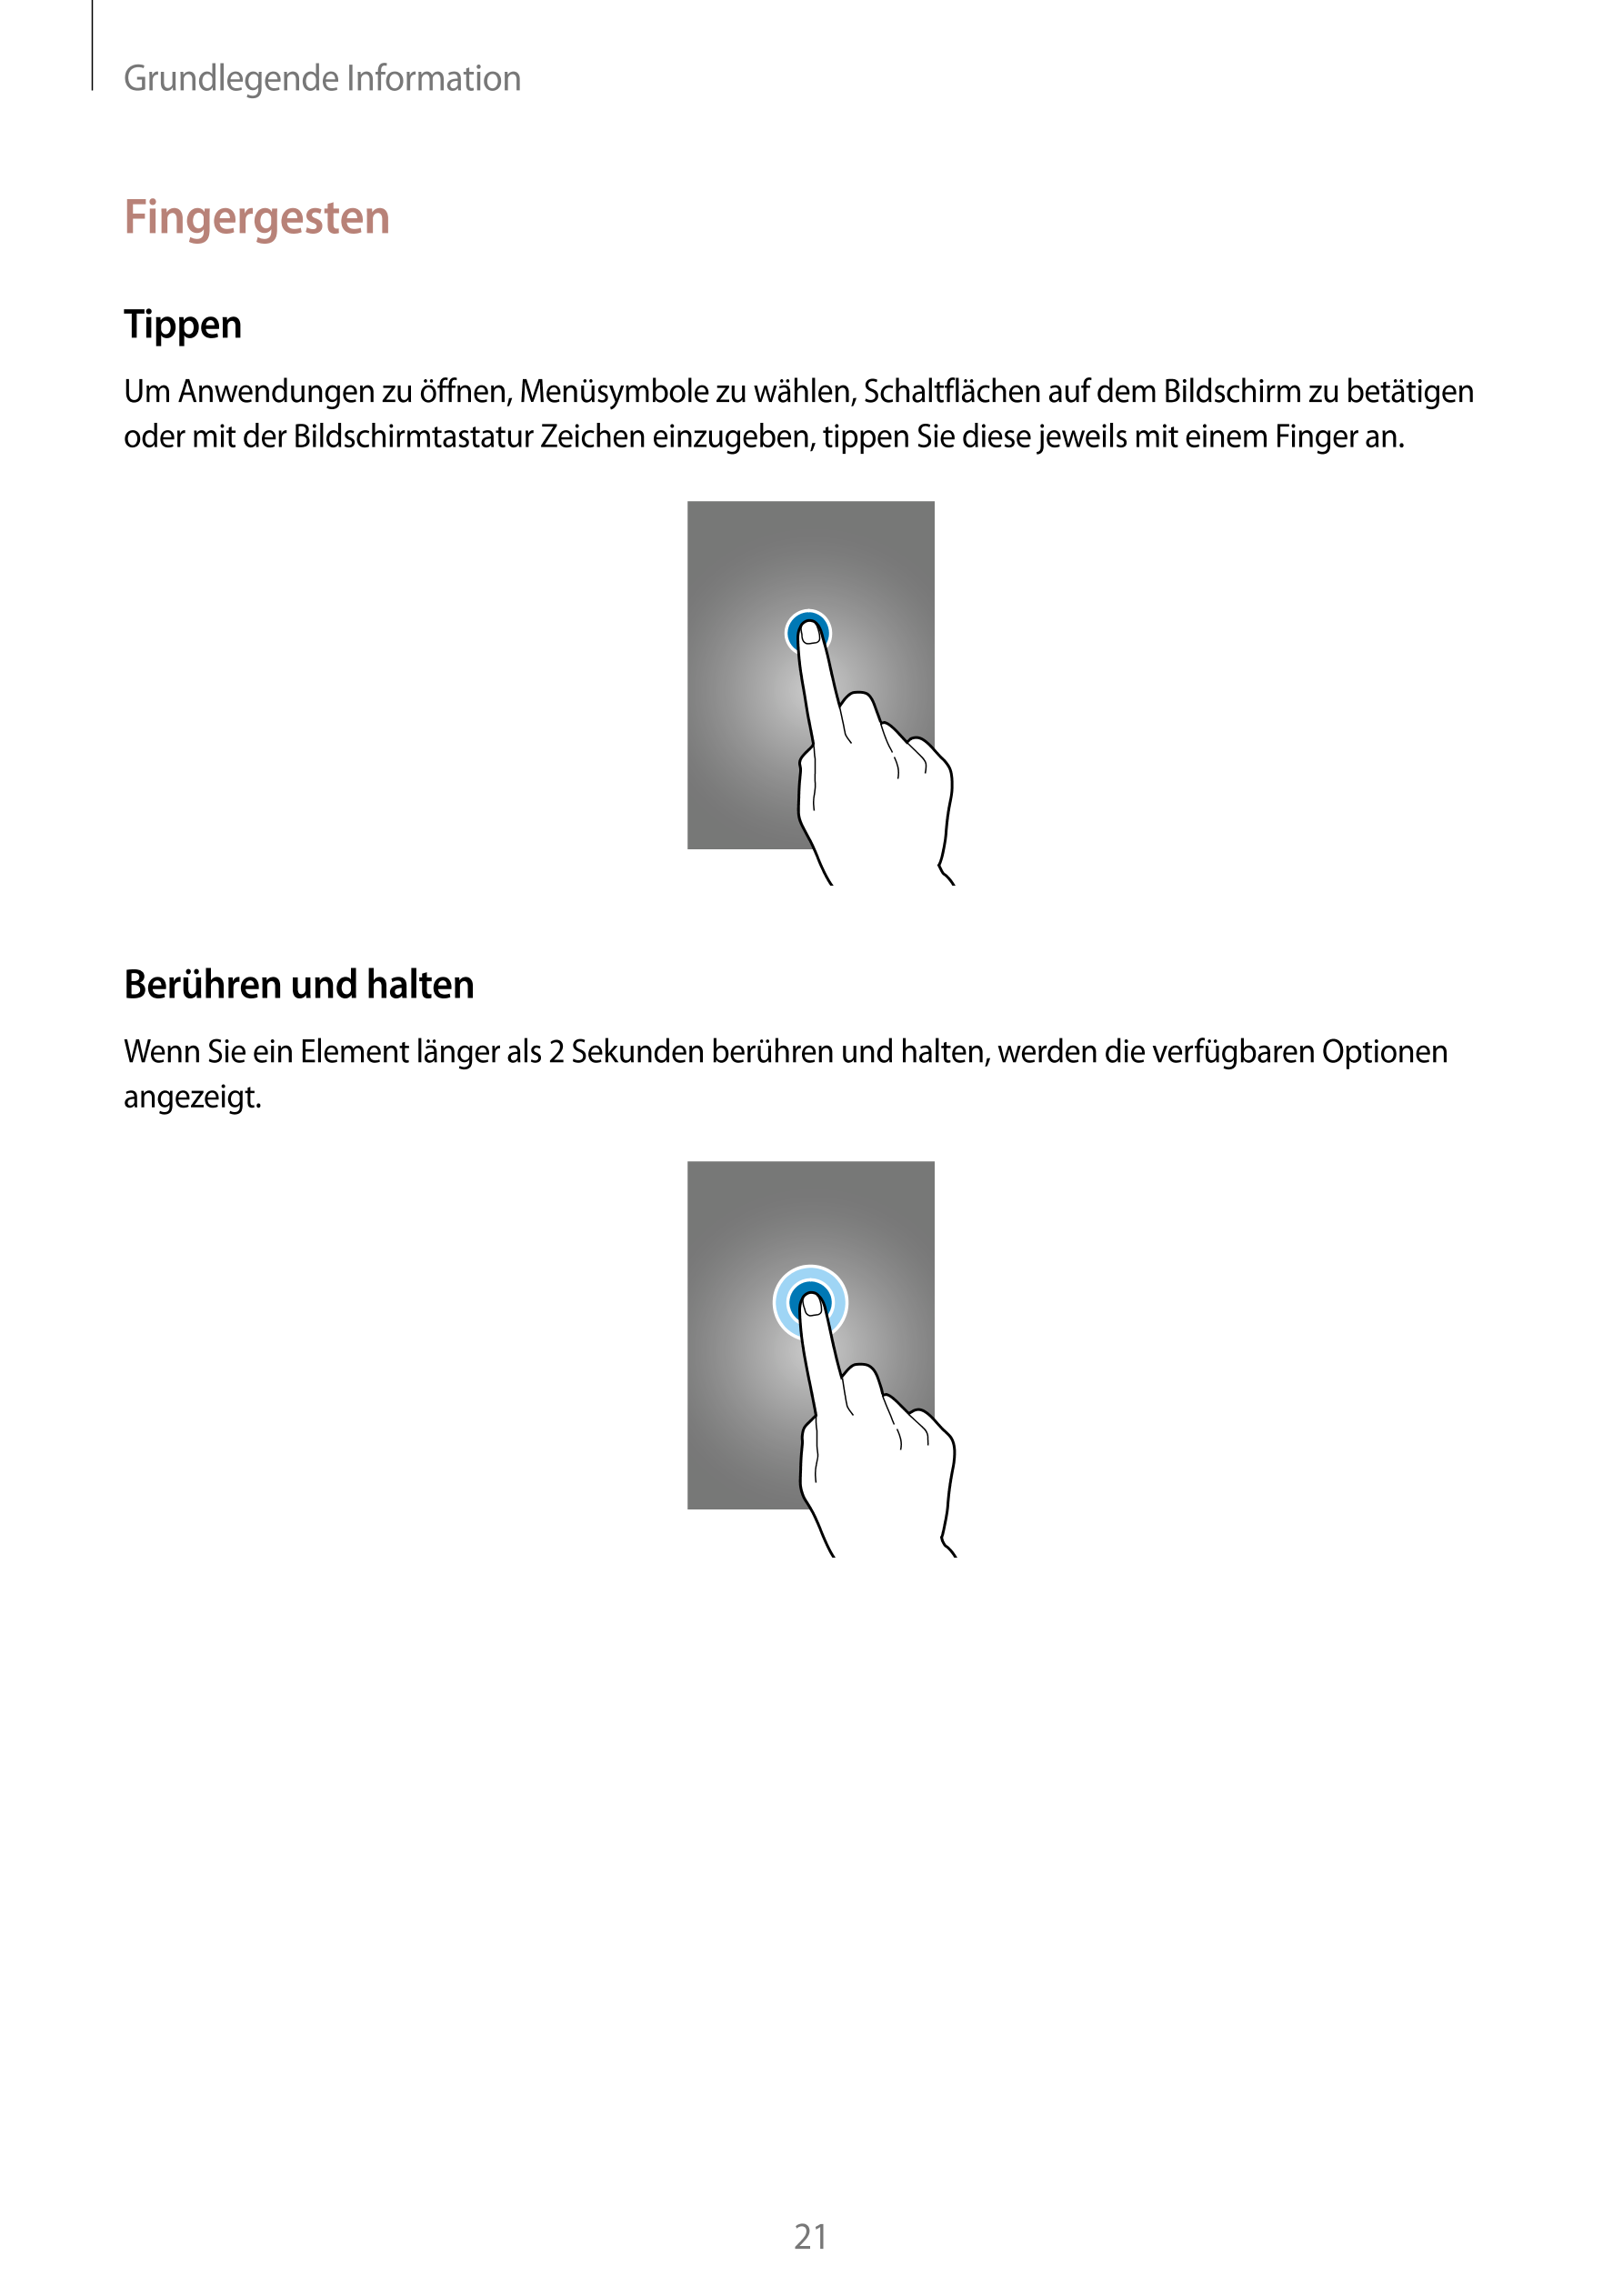 Grundlegende Information
Fingergesten
Tippen
Um Anwendungen zu öffnen, Menüsymbole zu wählen, Schaltflächen auf dem Bildschirm z